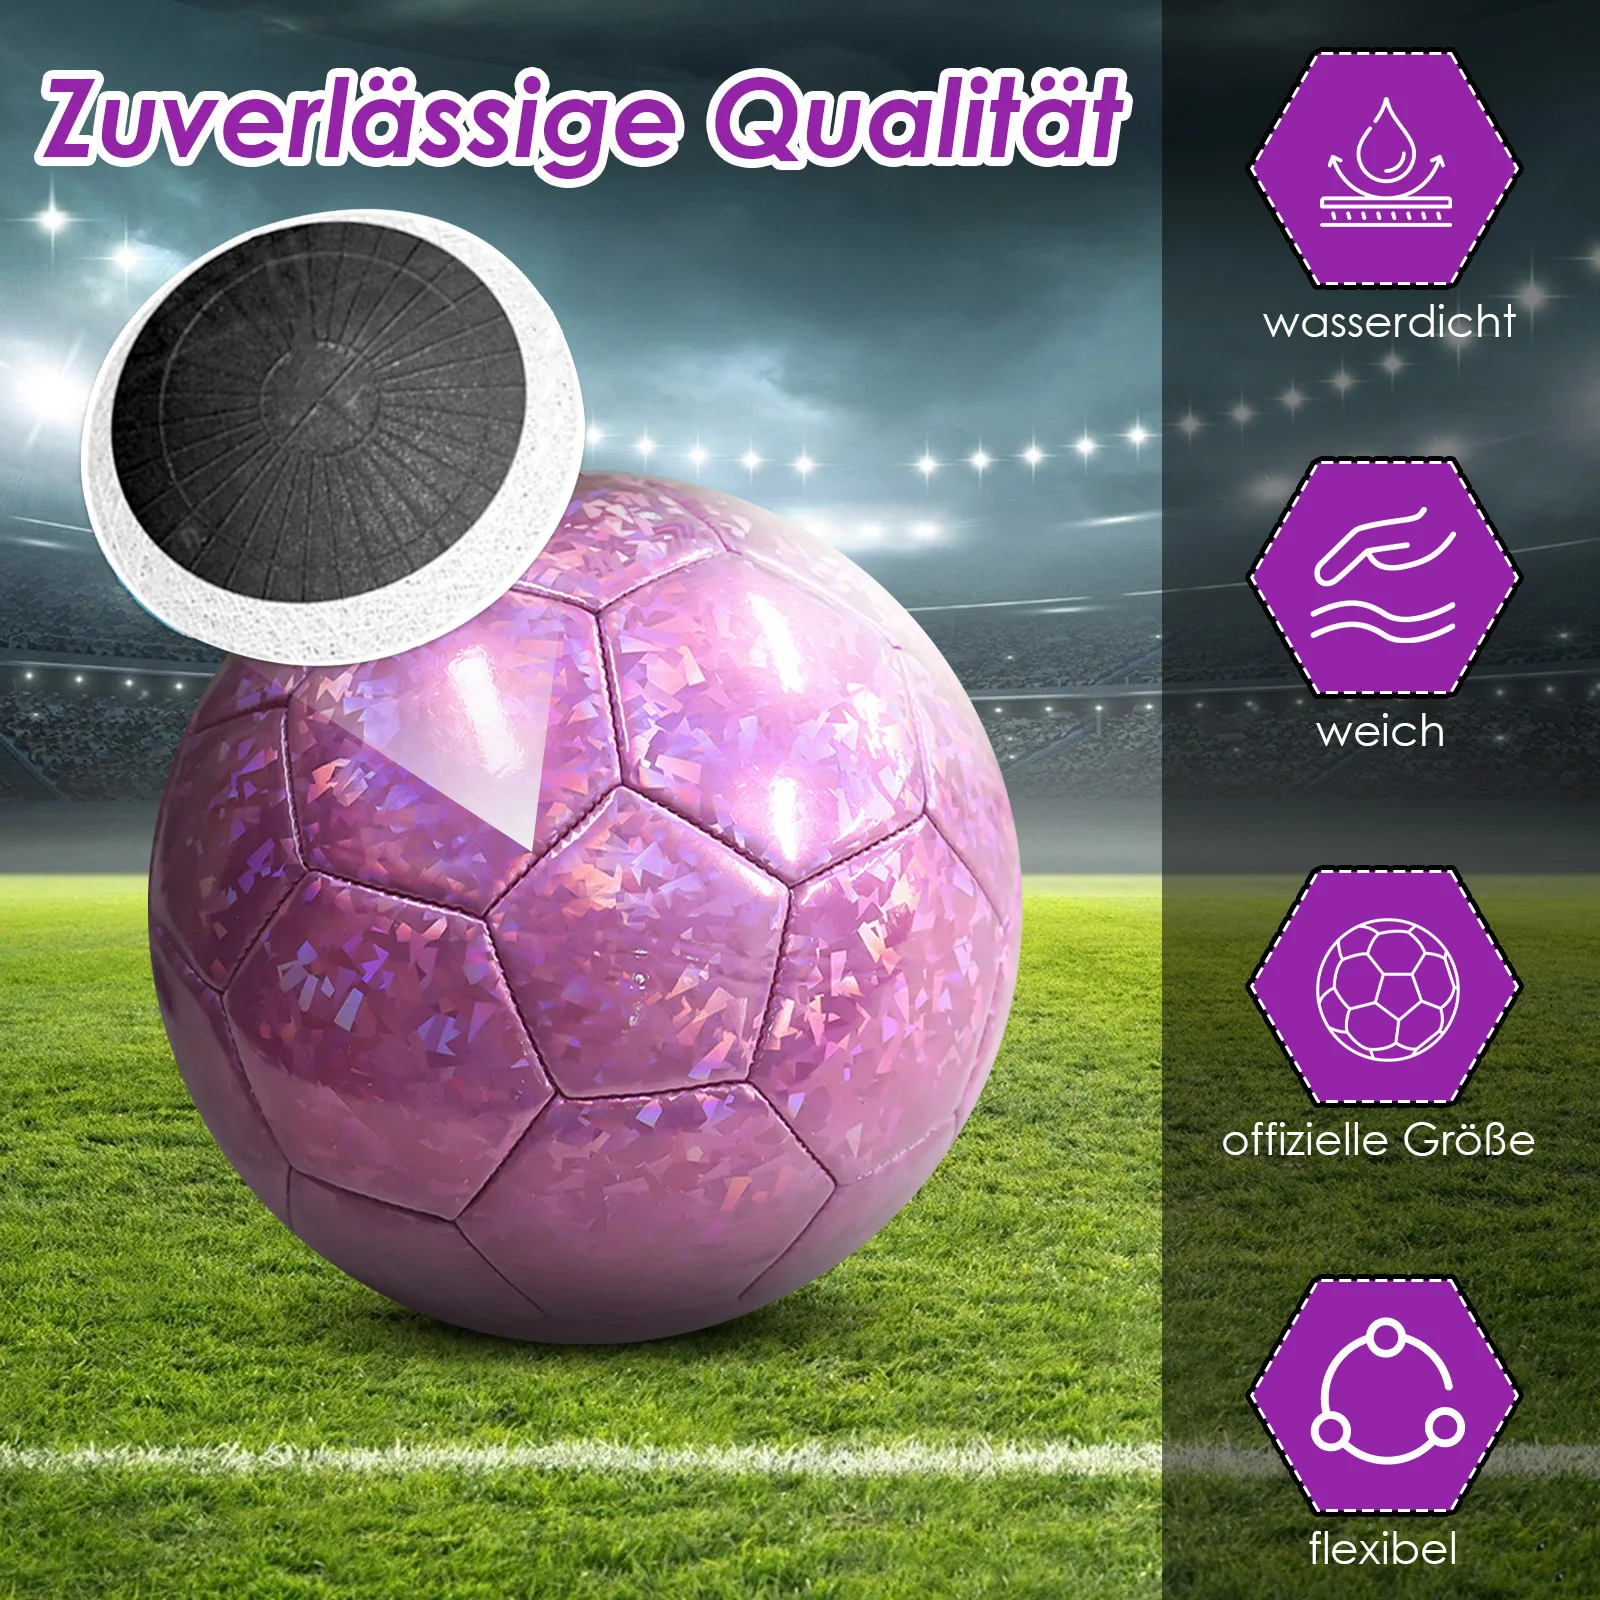 

Бесшовный футбольный мяч, размер 5, Стандартный Футбольный Мяч из ПУ для команды, футбольной лиги, уличные спортивные мячи высокого качества, Розовый Мяч